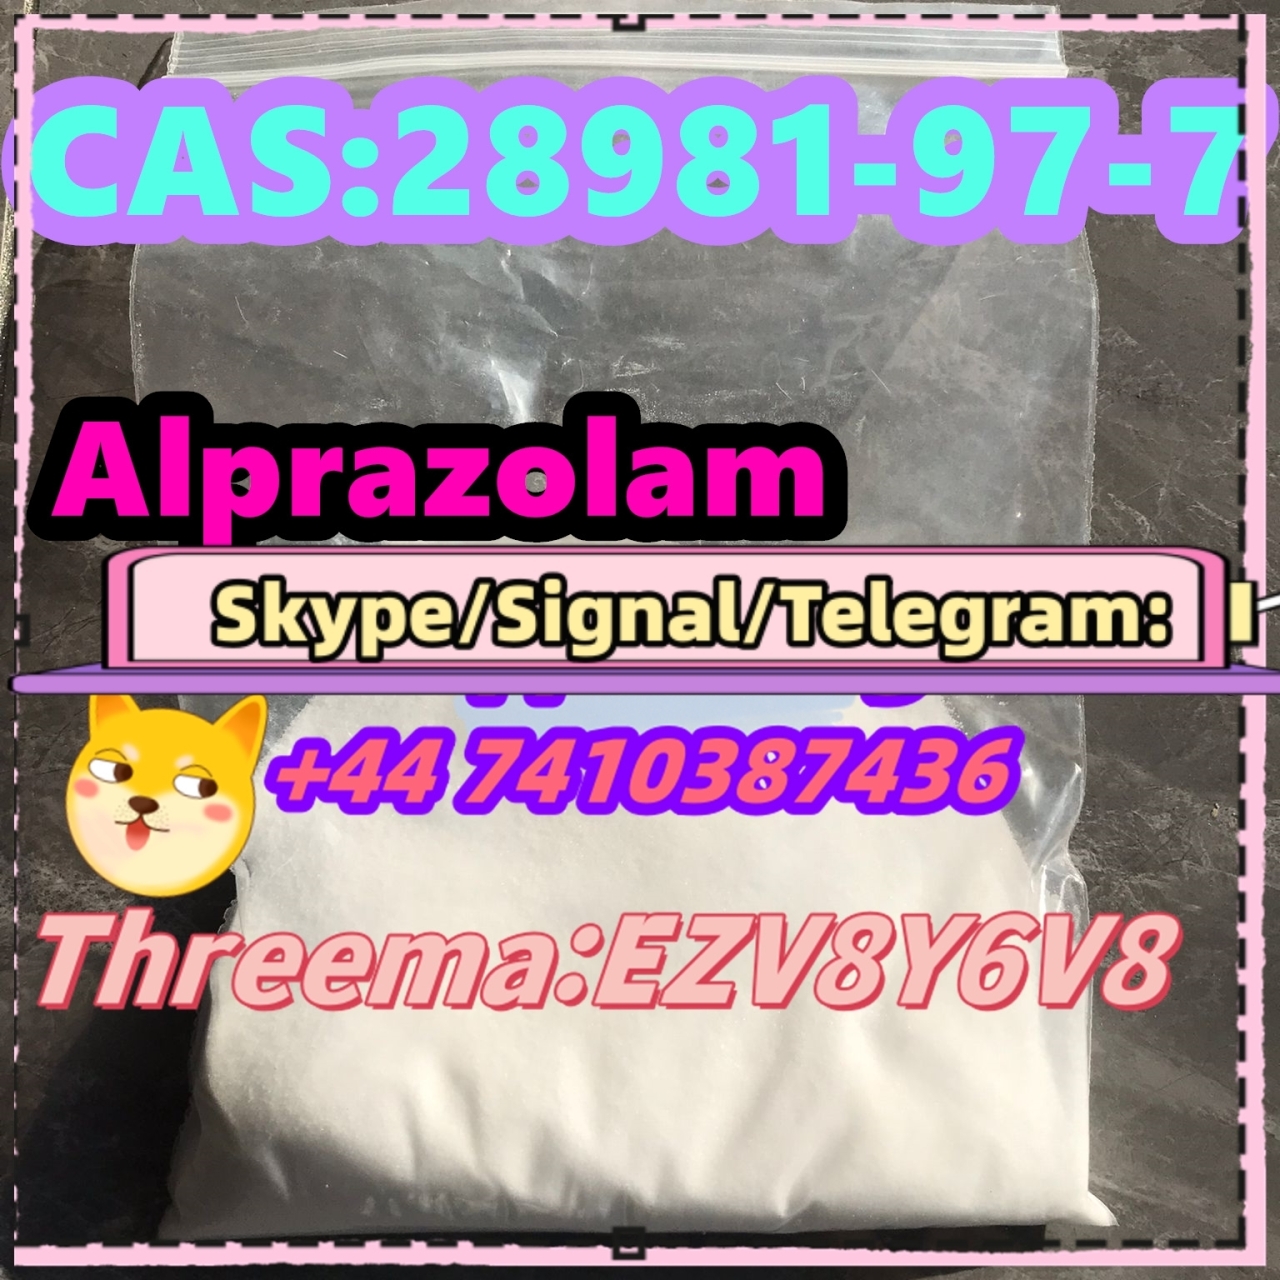 Alprazolam CAS:28981-97-7-1-2-3-4-5-6-7-8-9-10-11-12-13-14-15-16-17-18-19-20-21-22-23-24 24-04-30